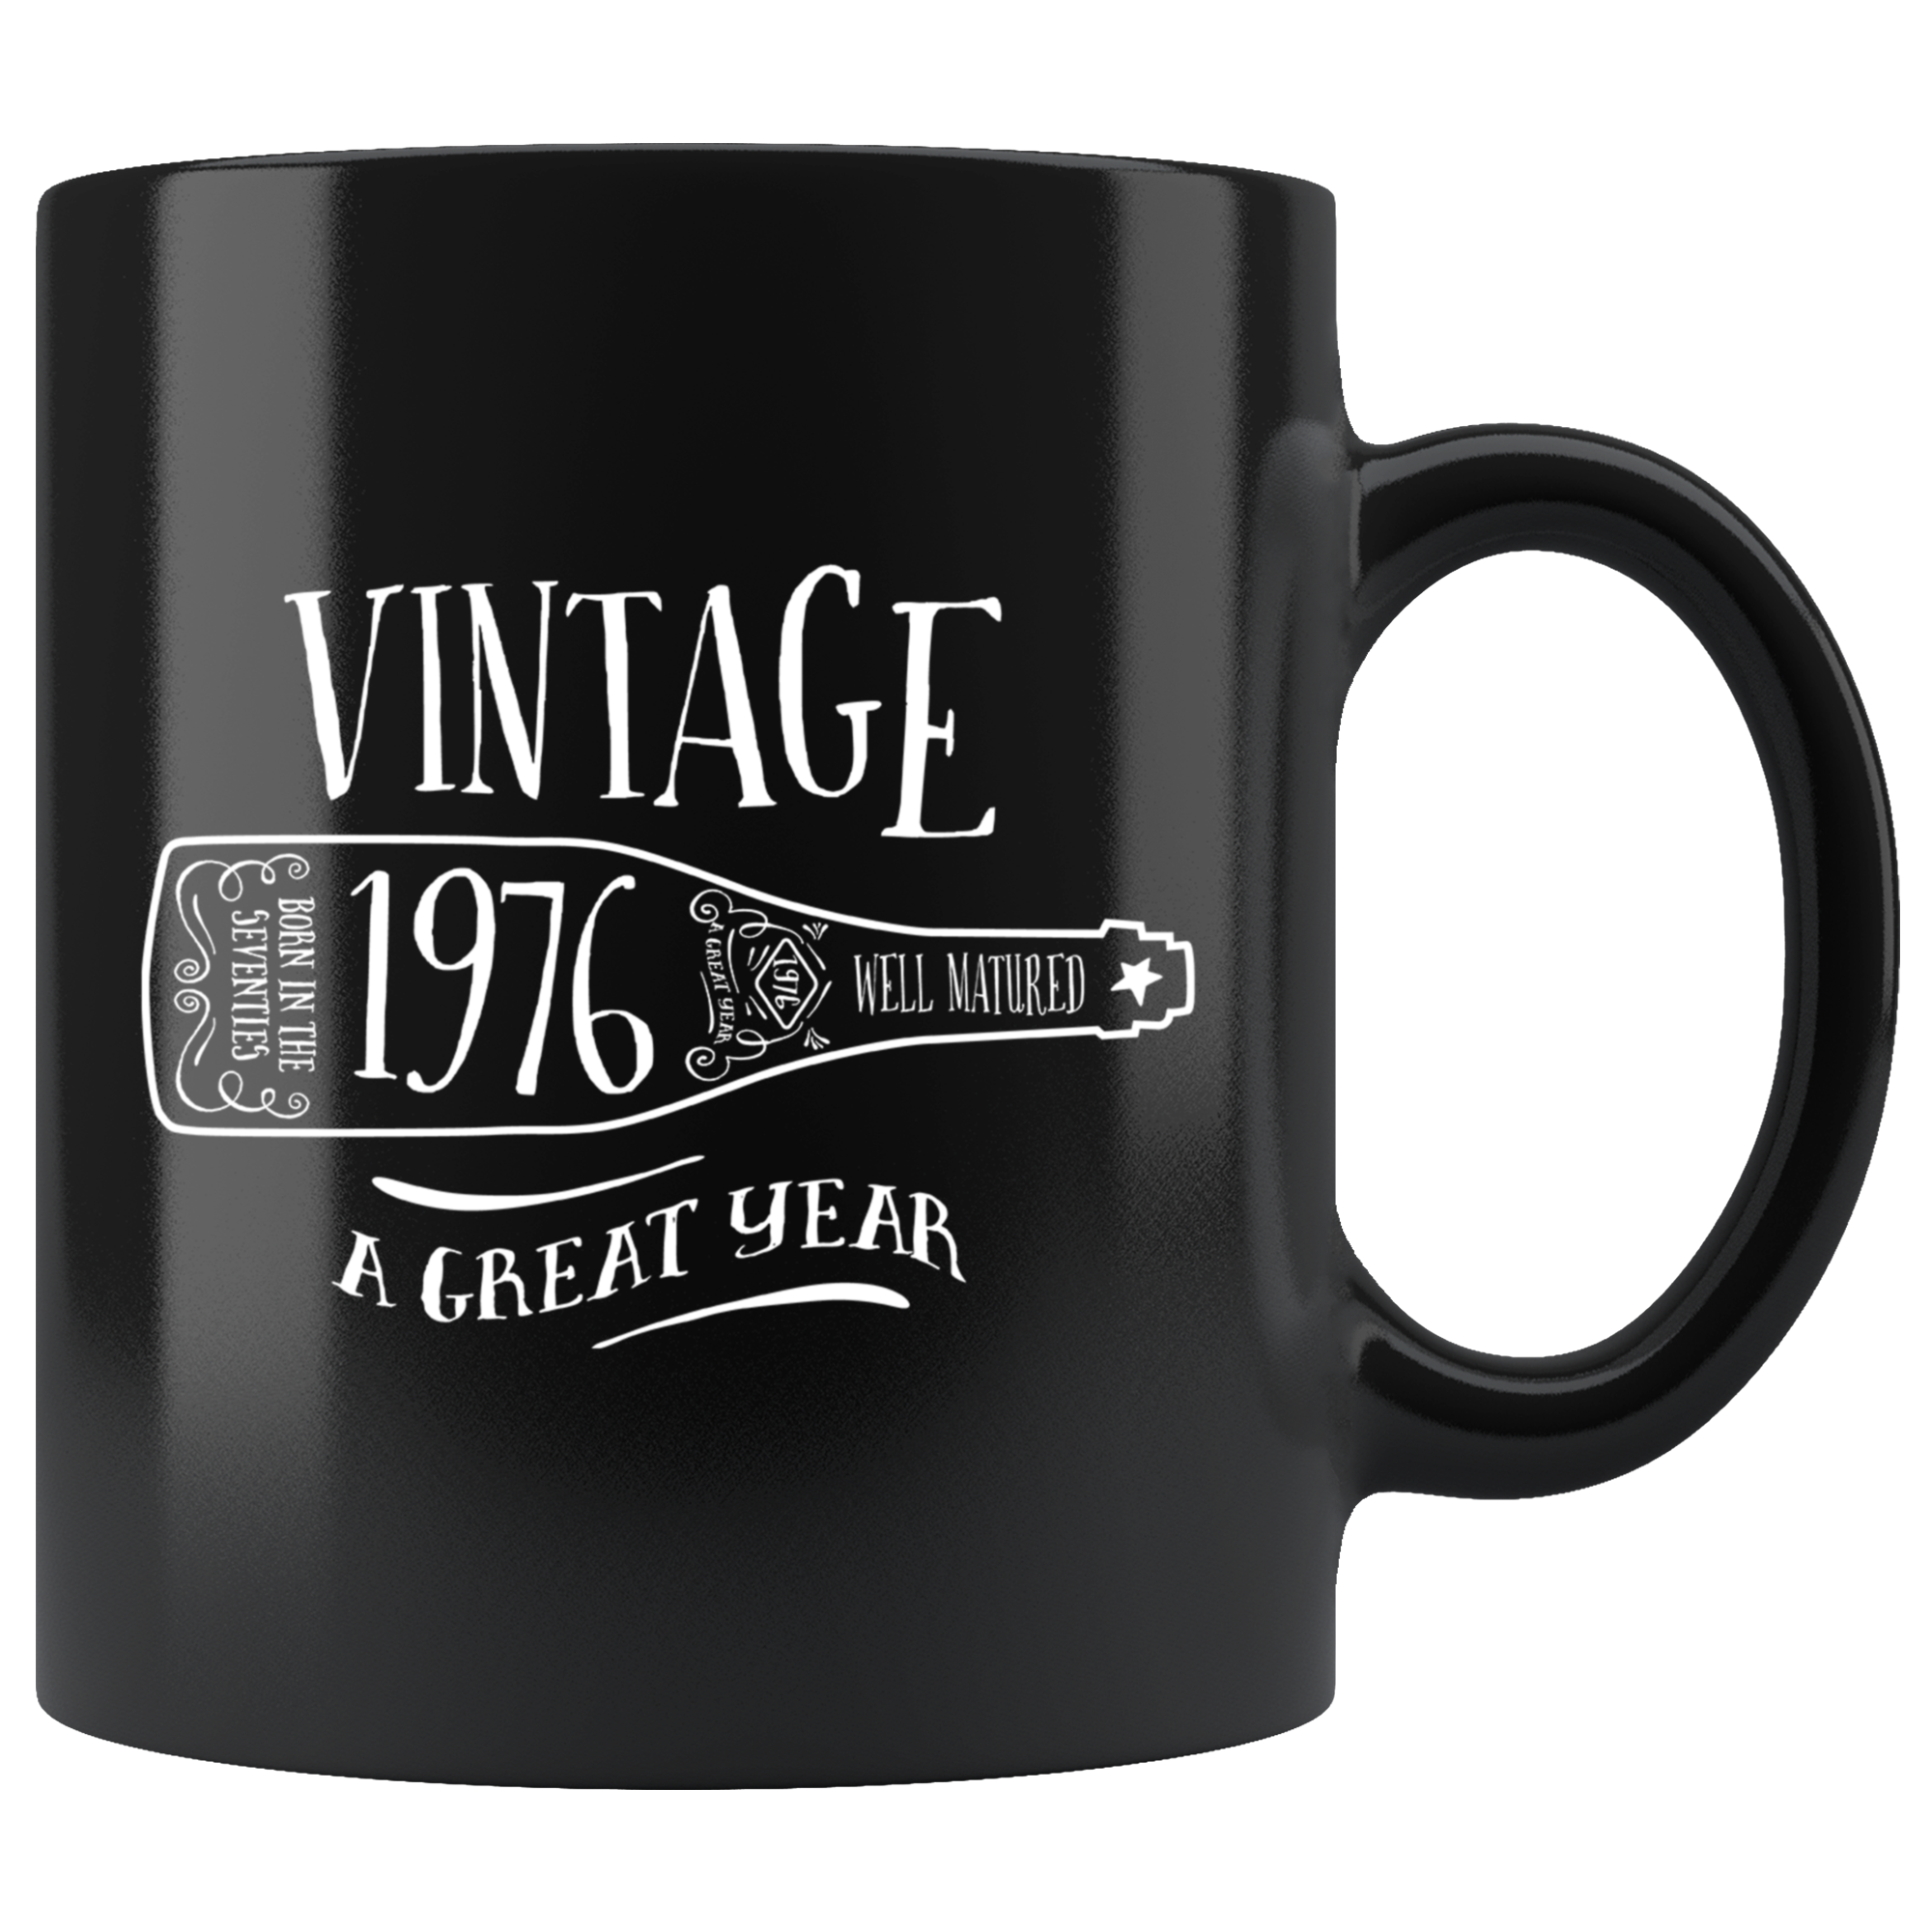 Vintage 1976 - Black Mug